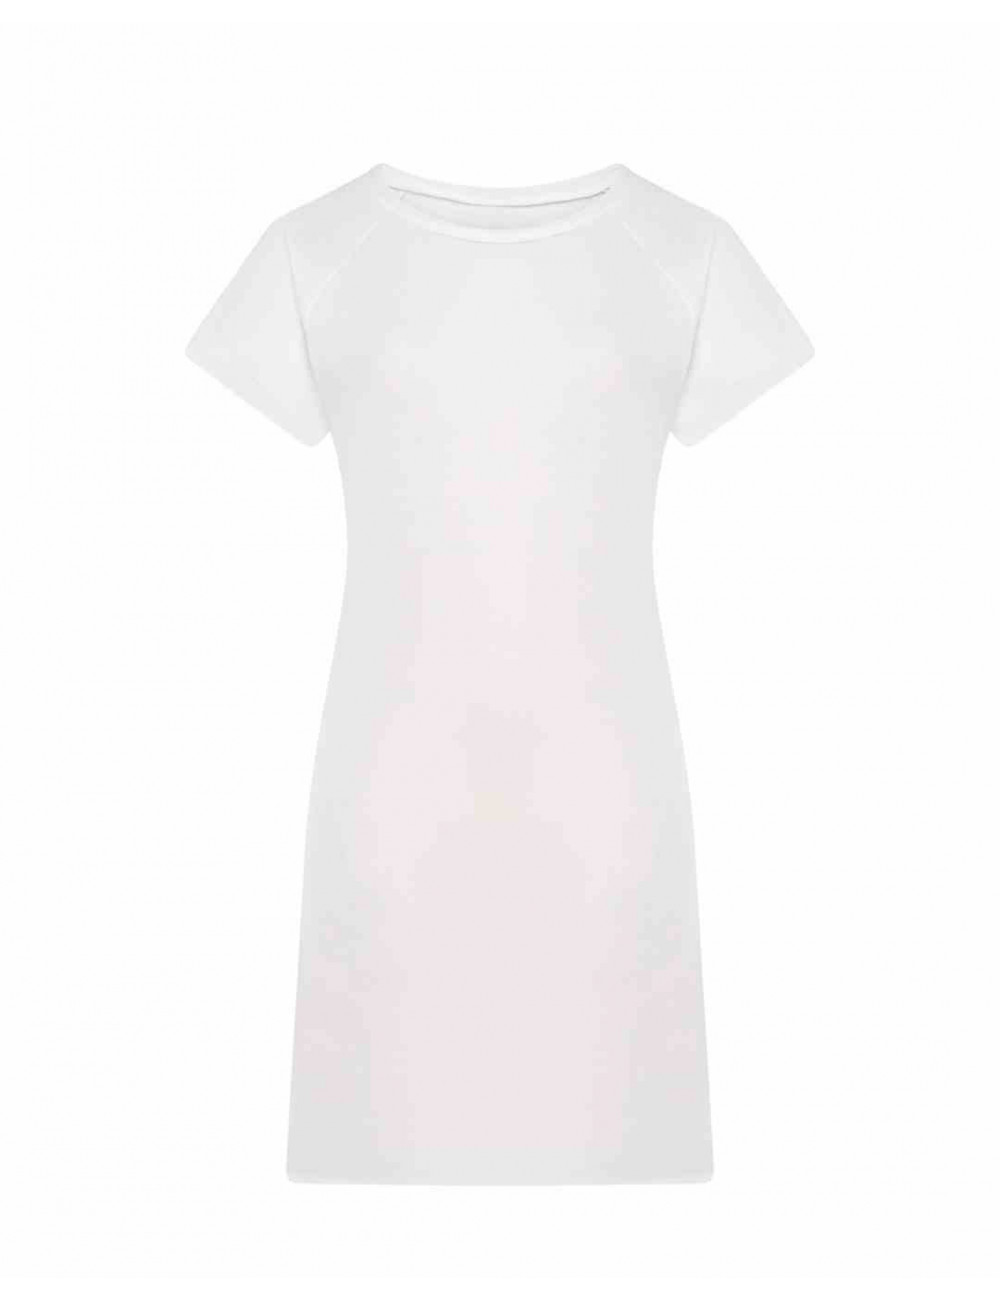 Damen-Sublimations-T-Shirt Subli-Kleid weiß effizient JHK